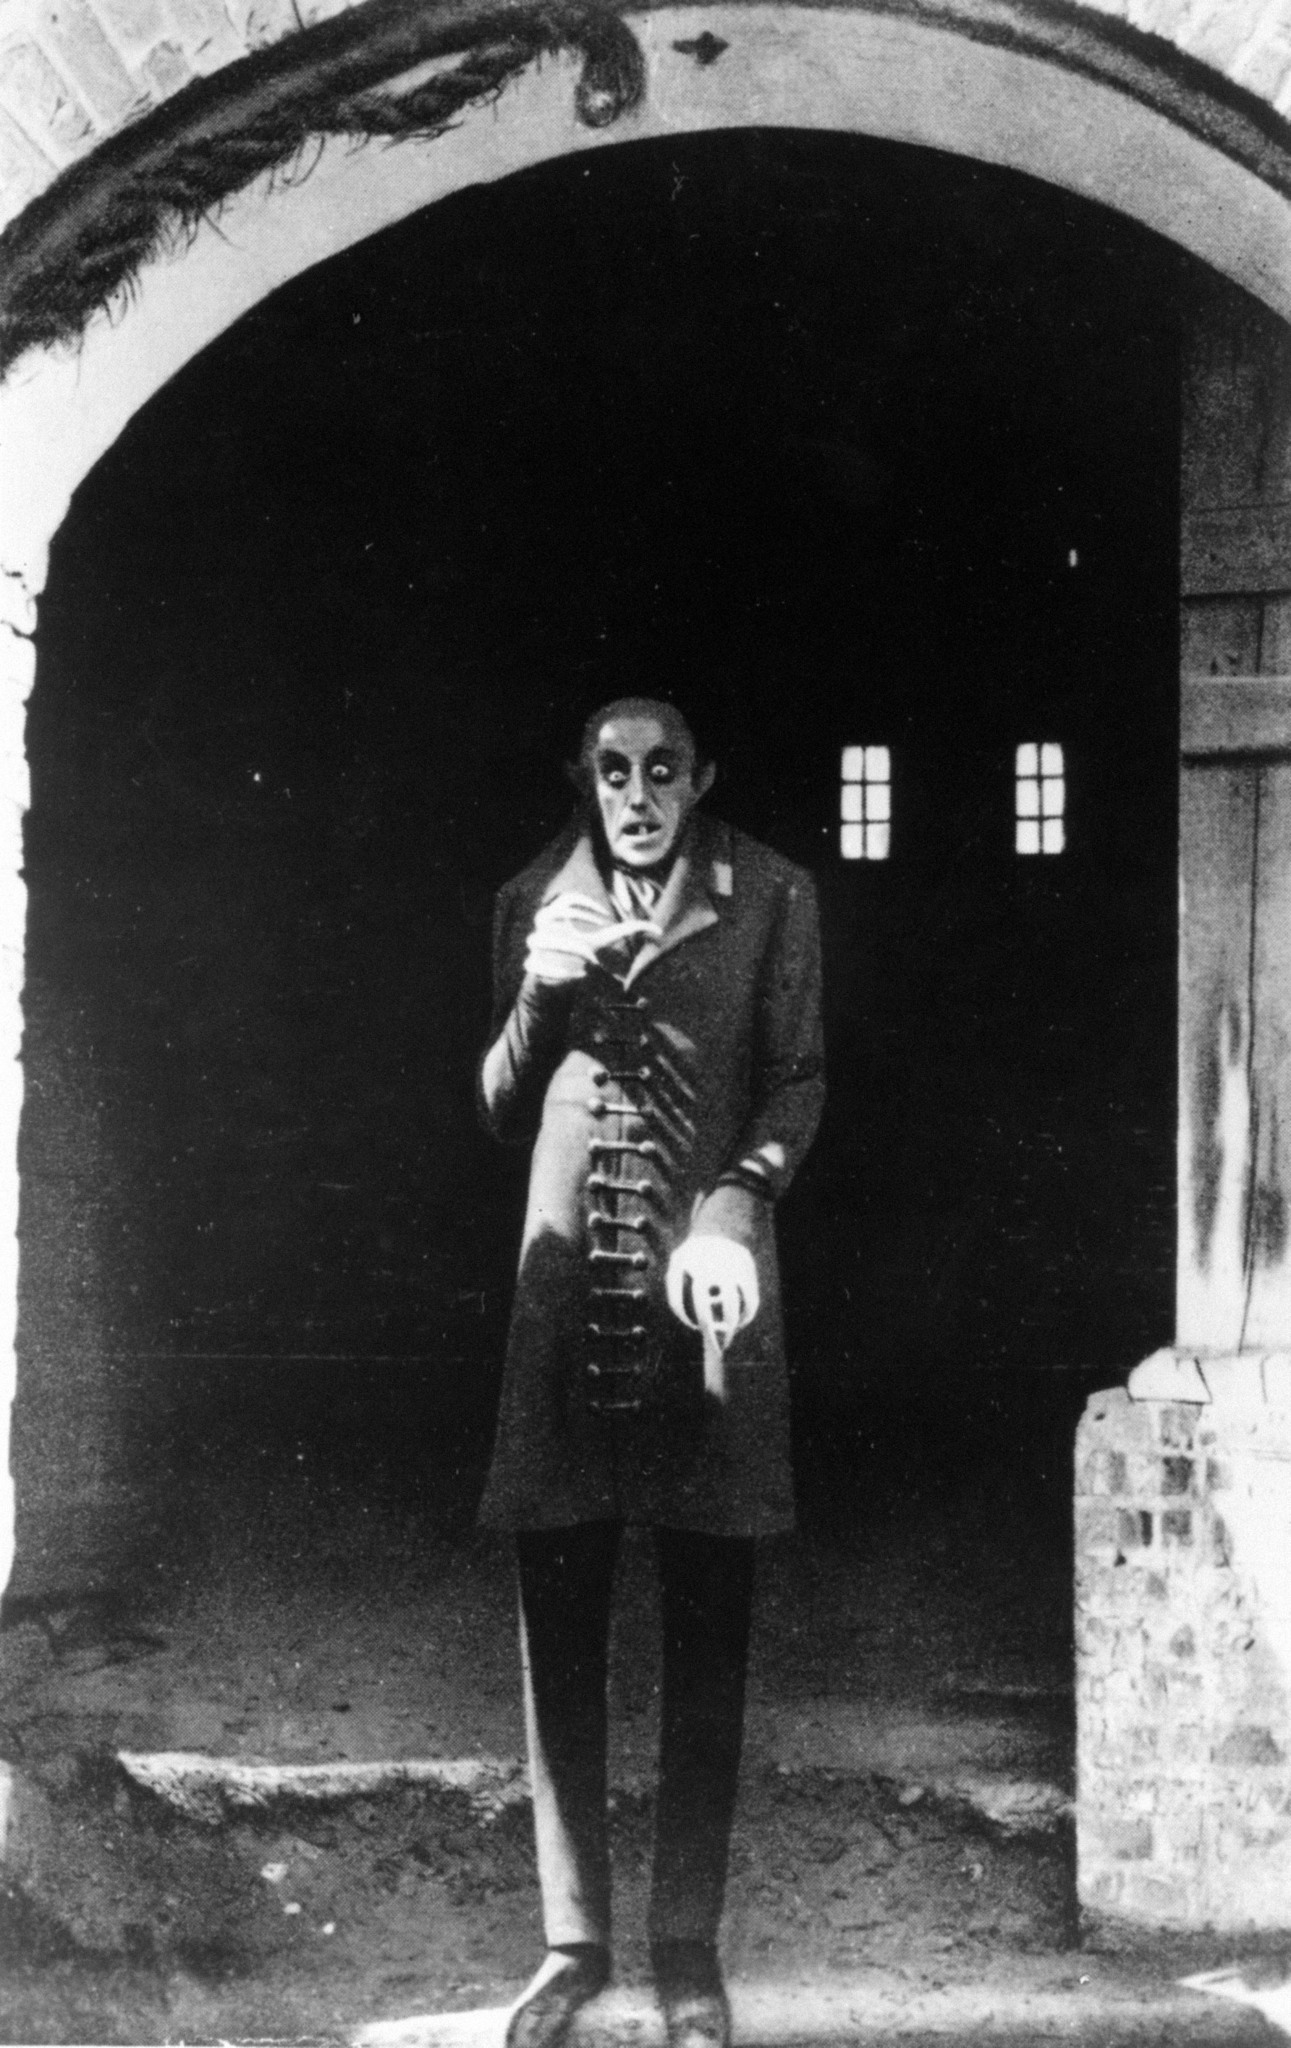 Still of Max Schreck in Nosferatu (1922)